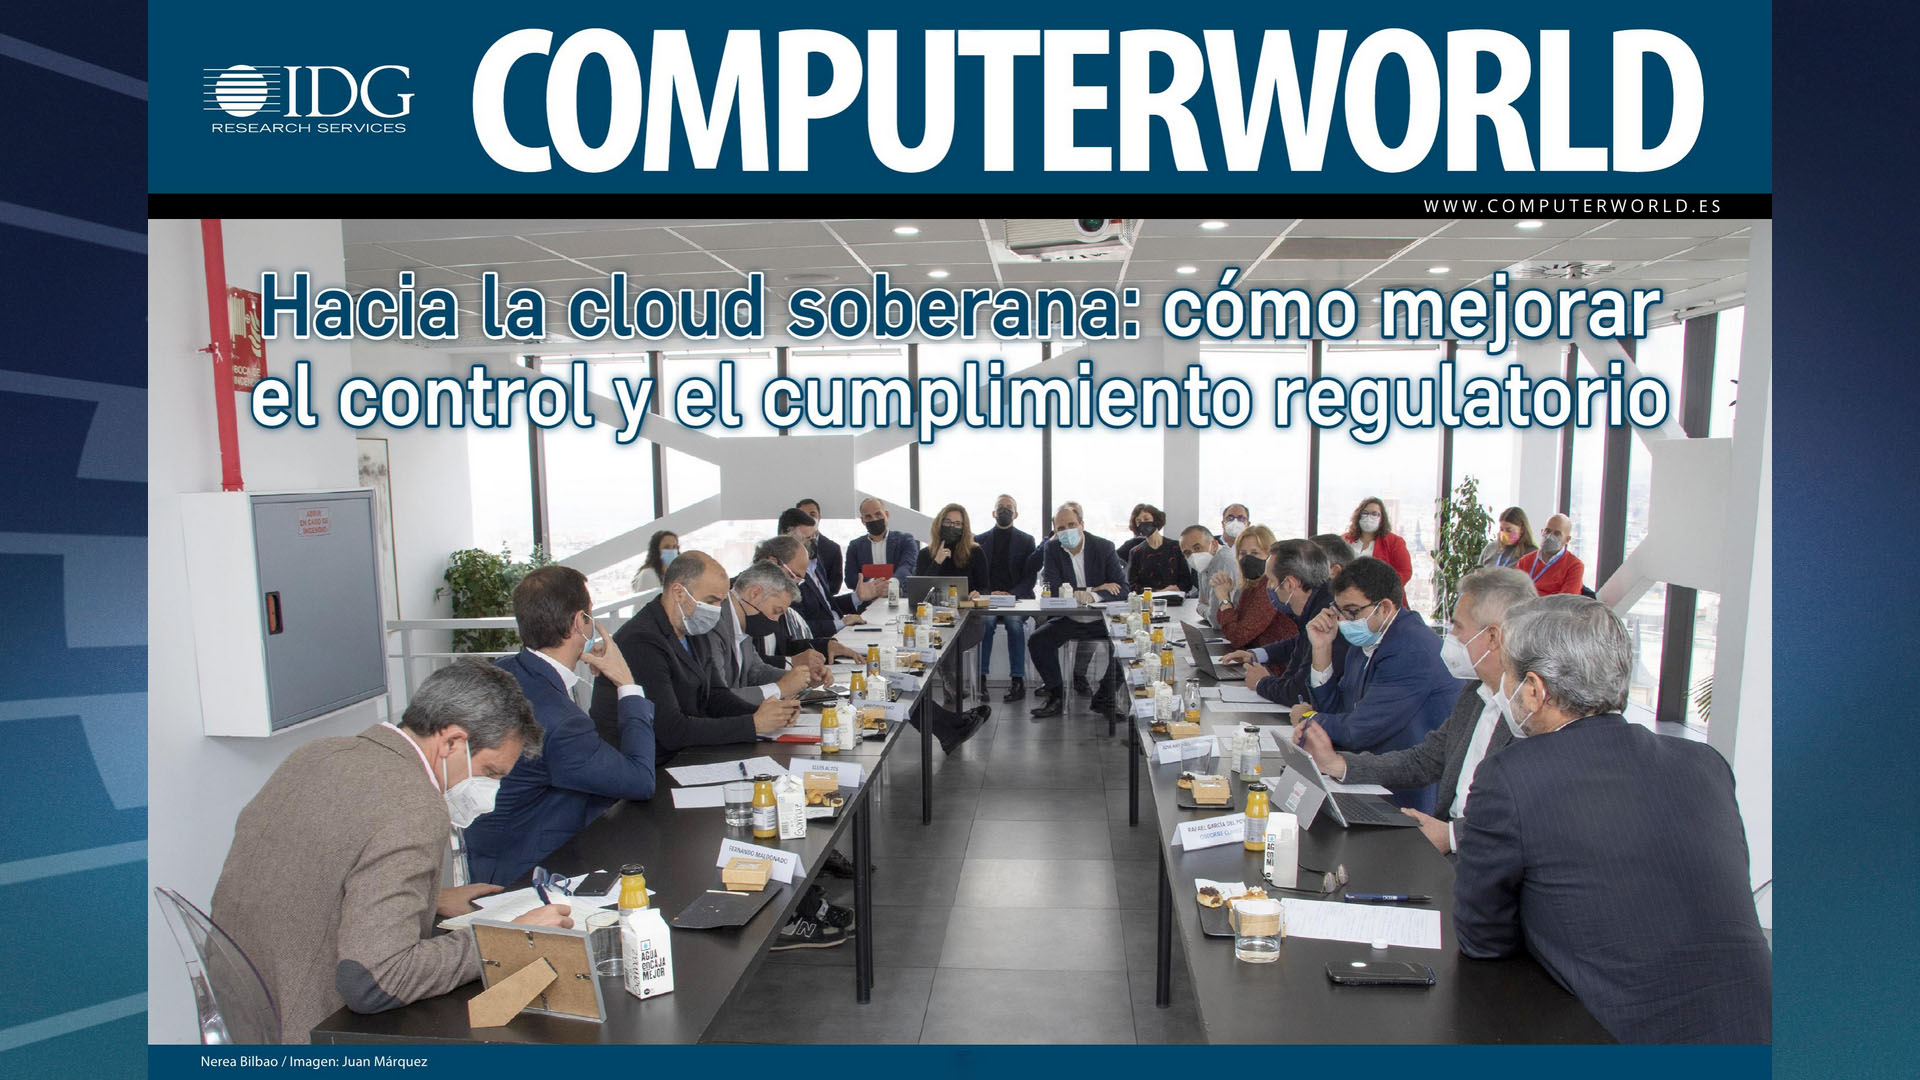 ComputerWorld Insider Evento Gobierno Digital 2022